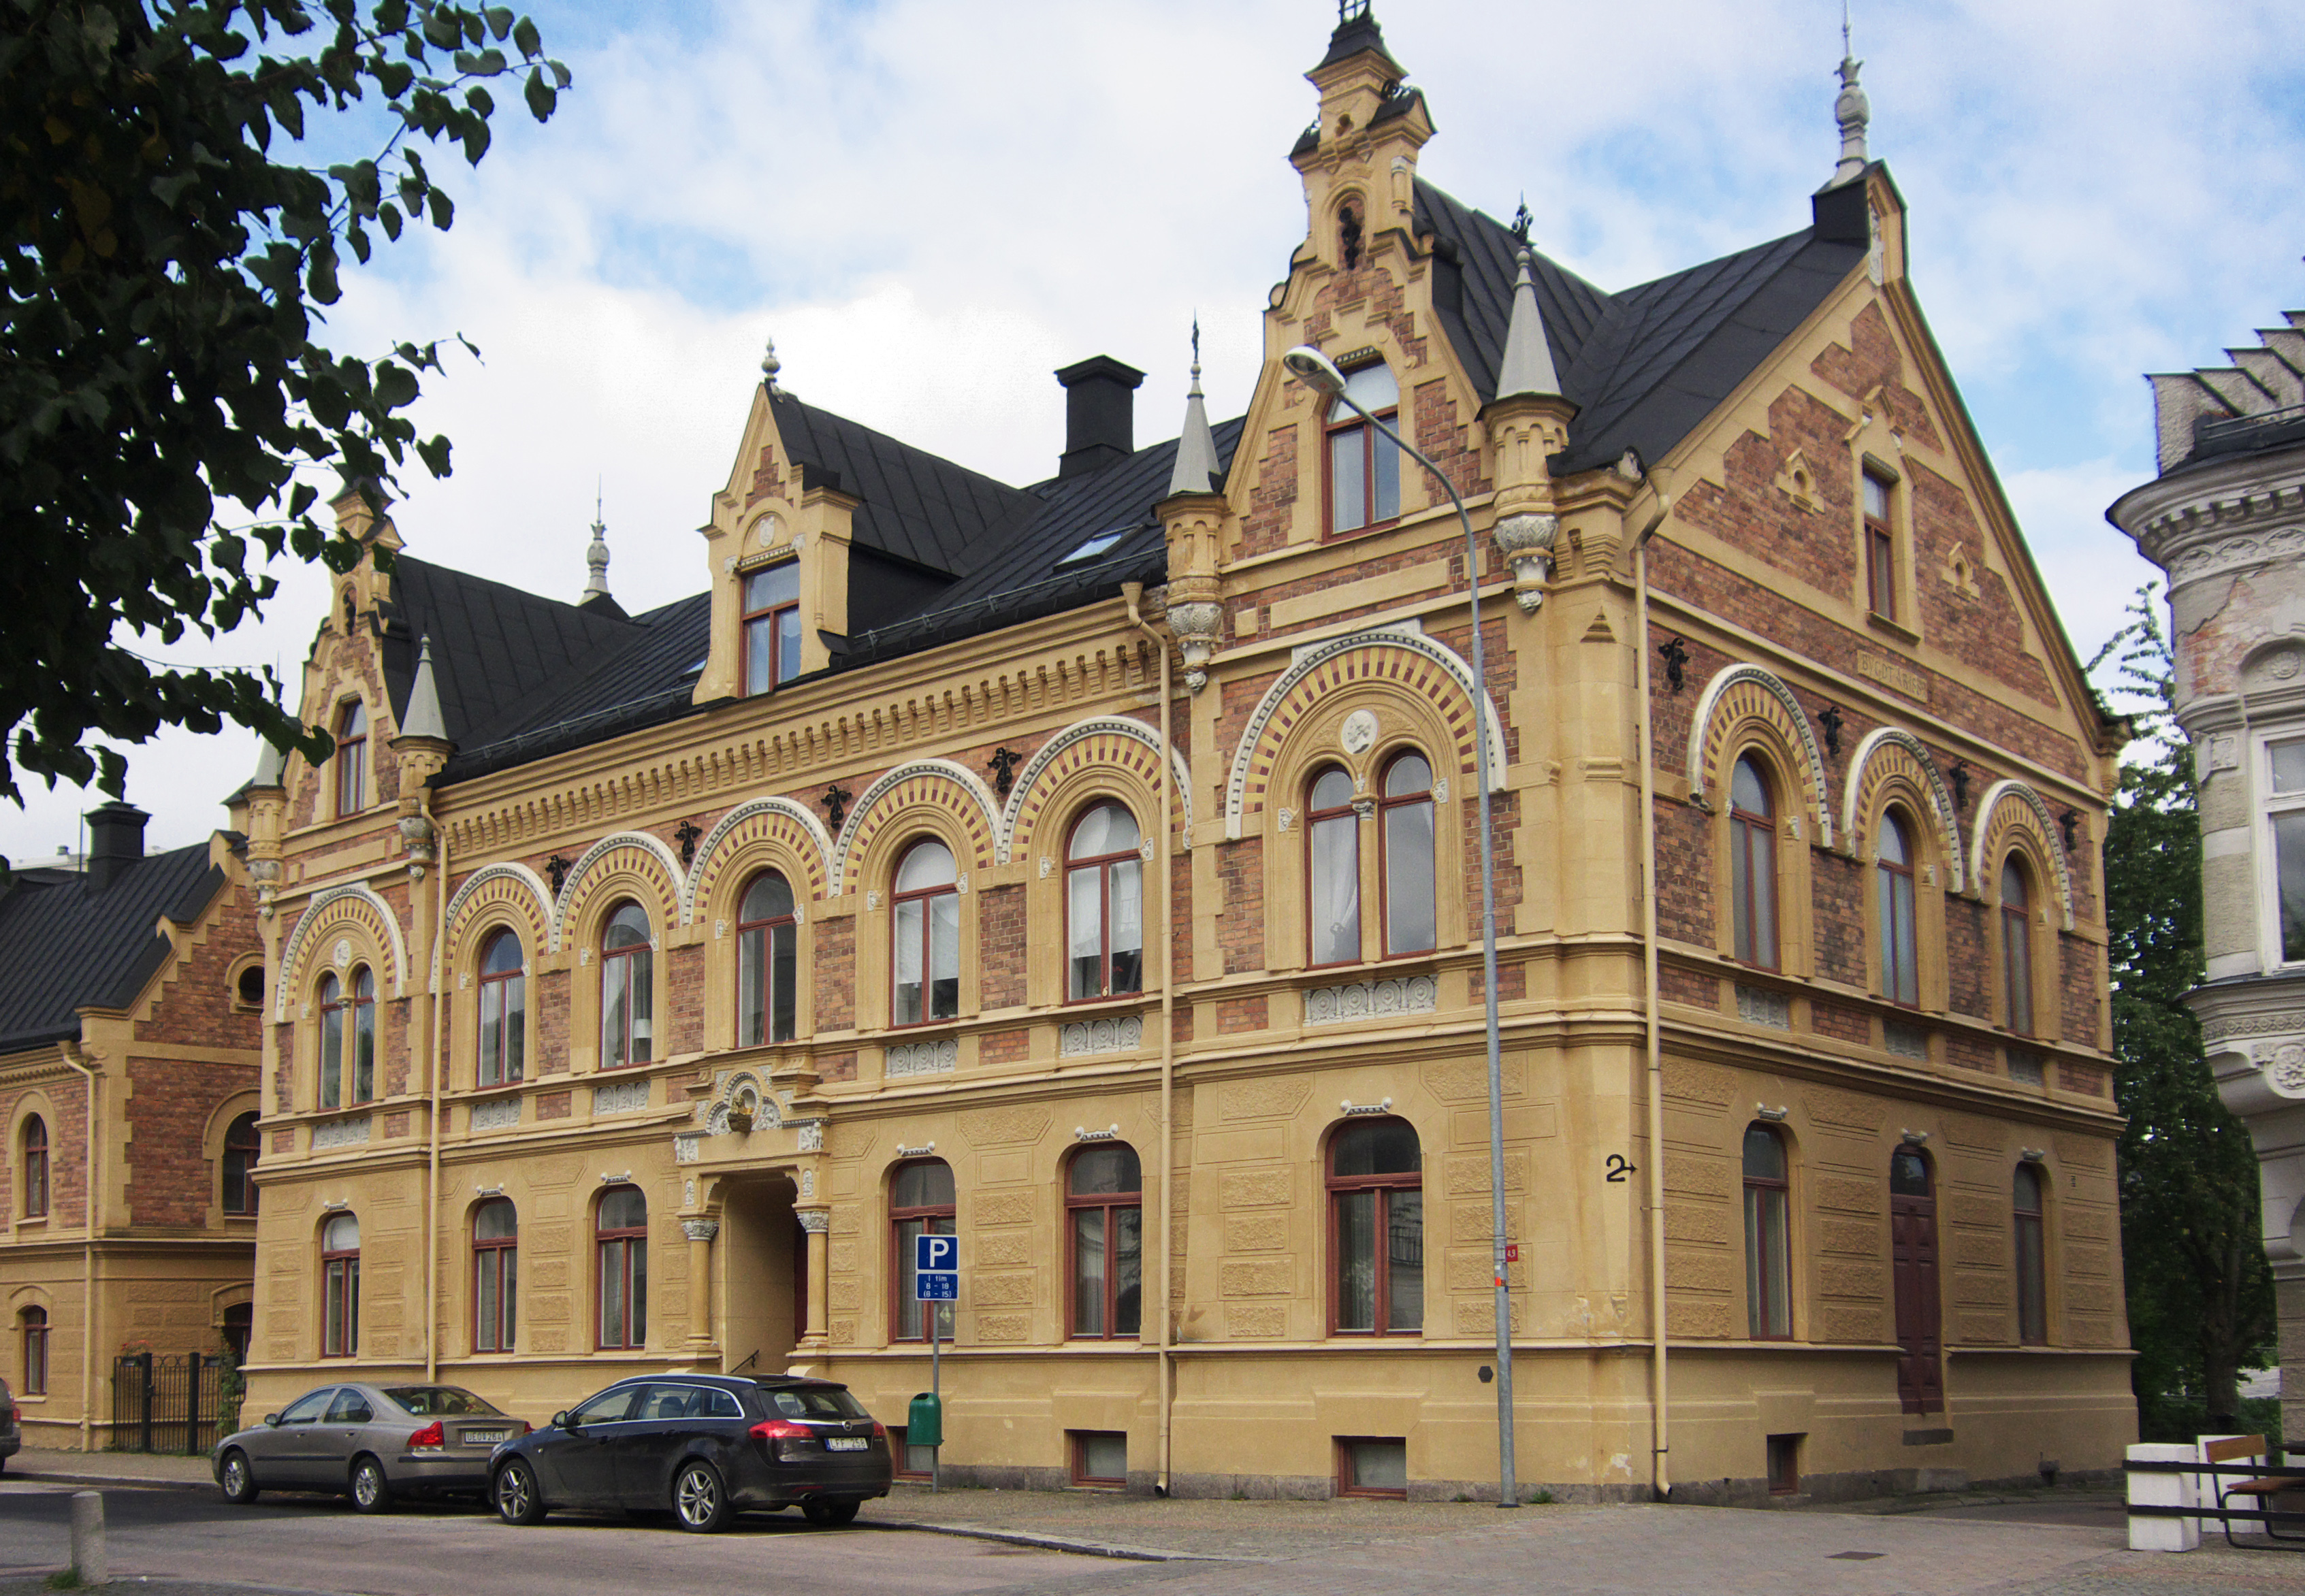 Är Apotekshuset i Köping Sveriges vackraste byggnad genom tiderna?